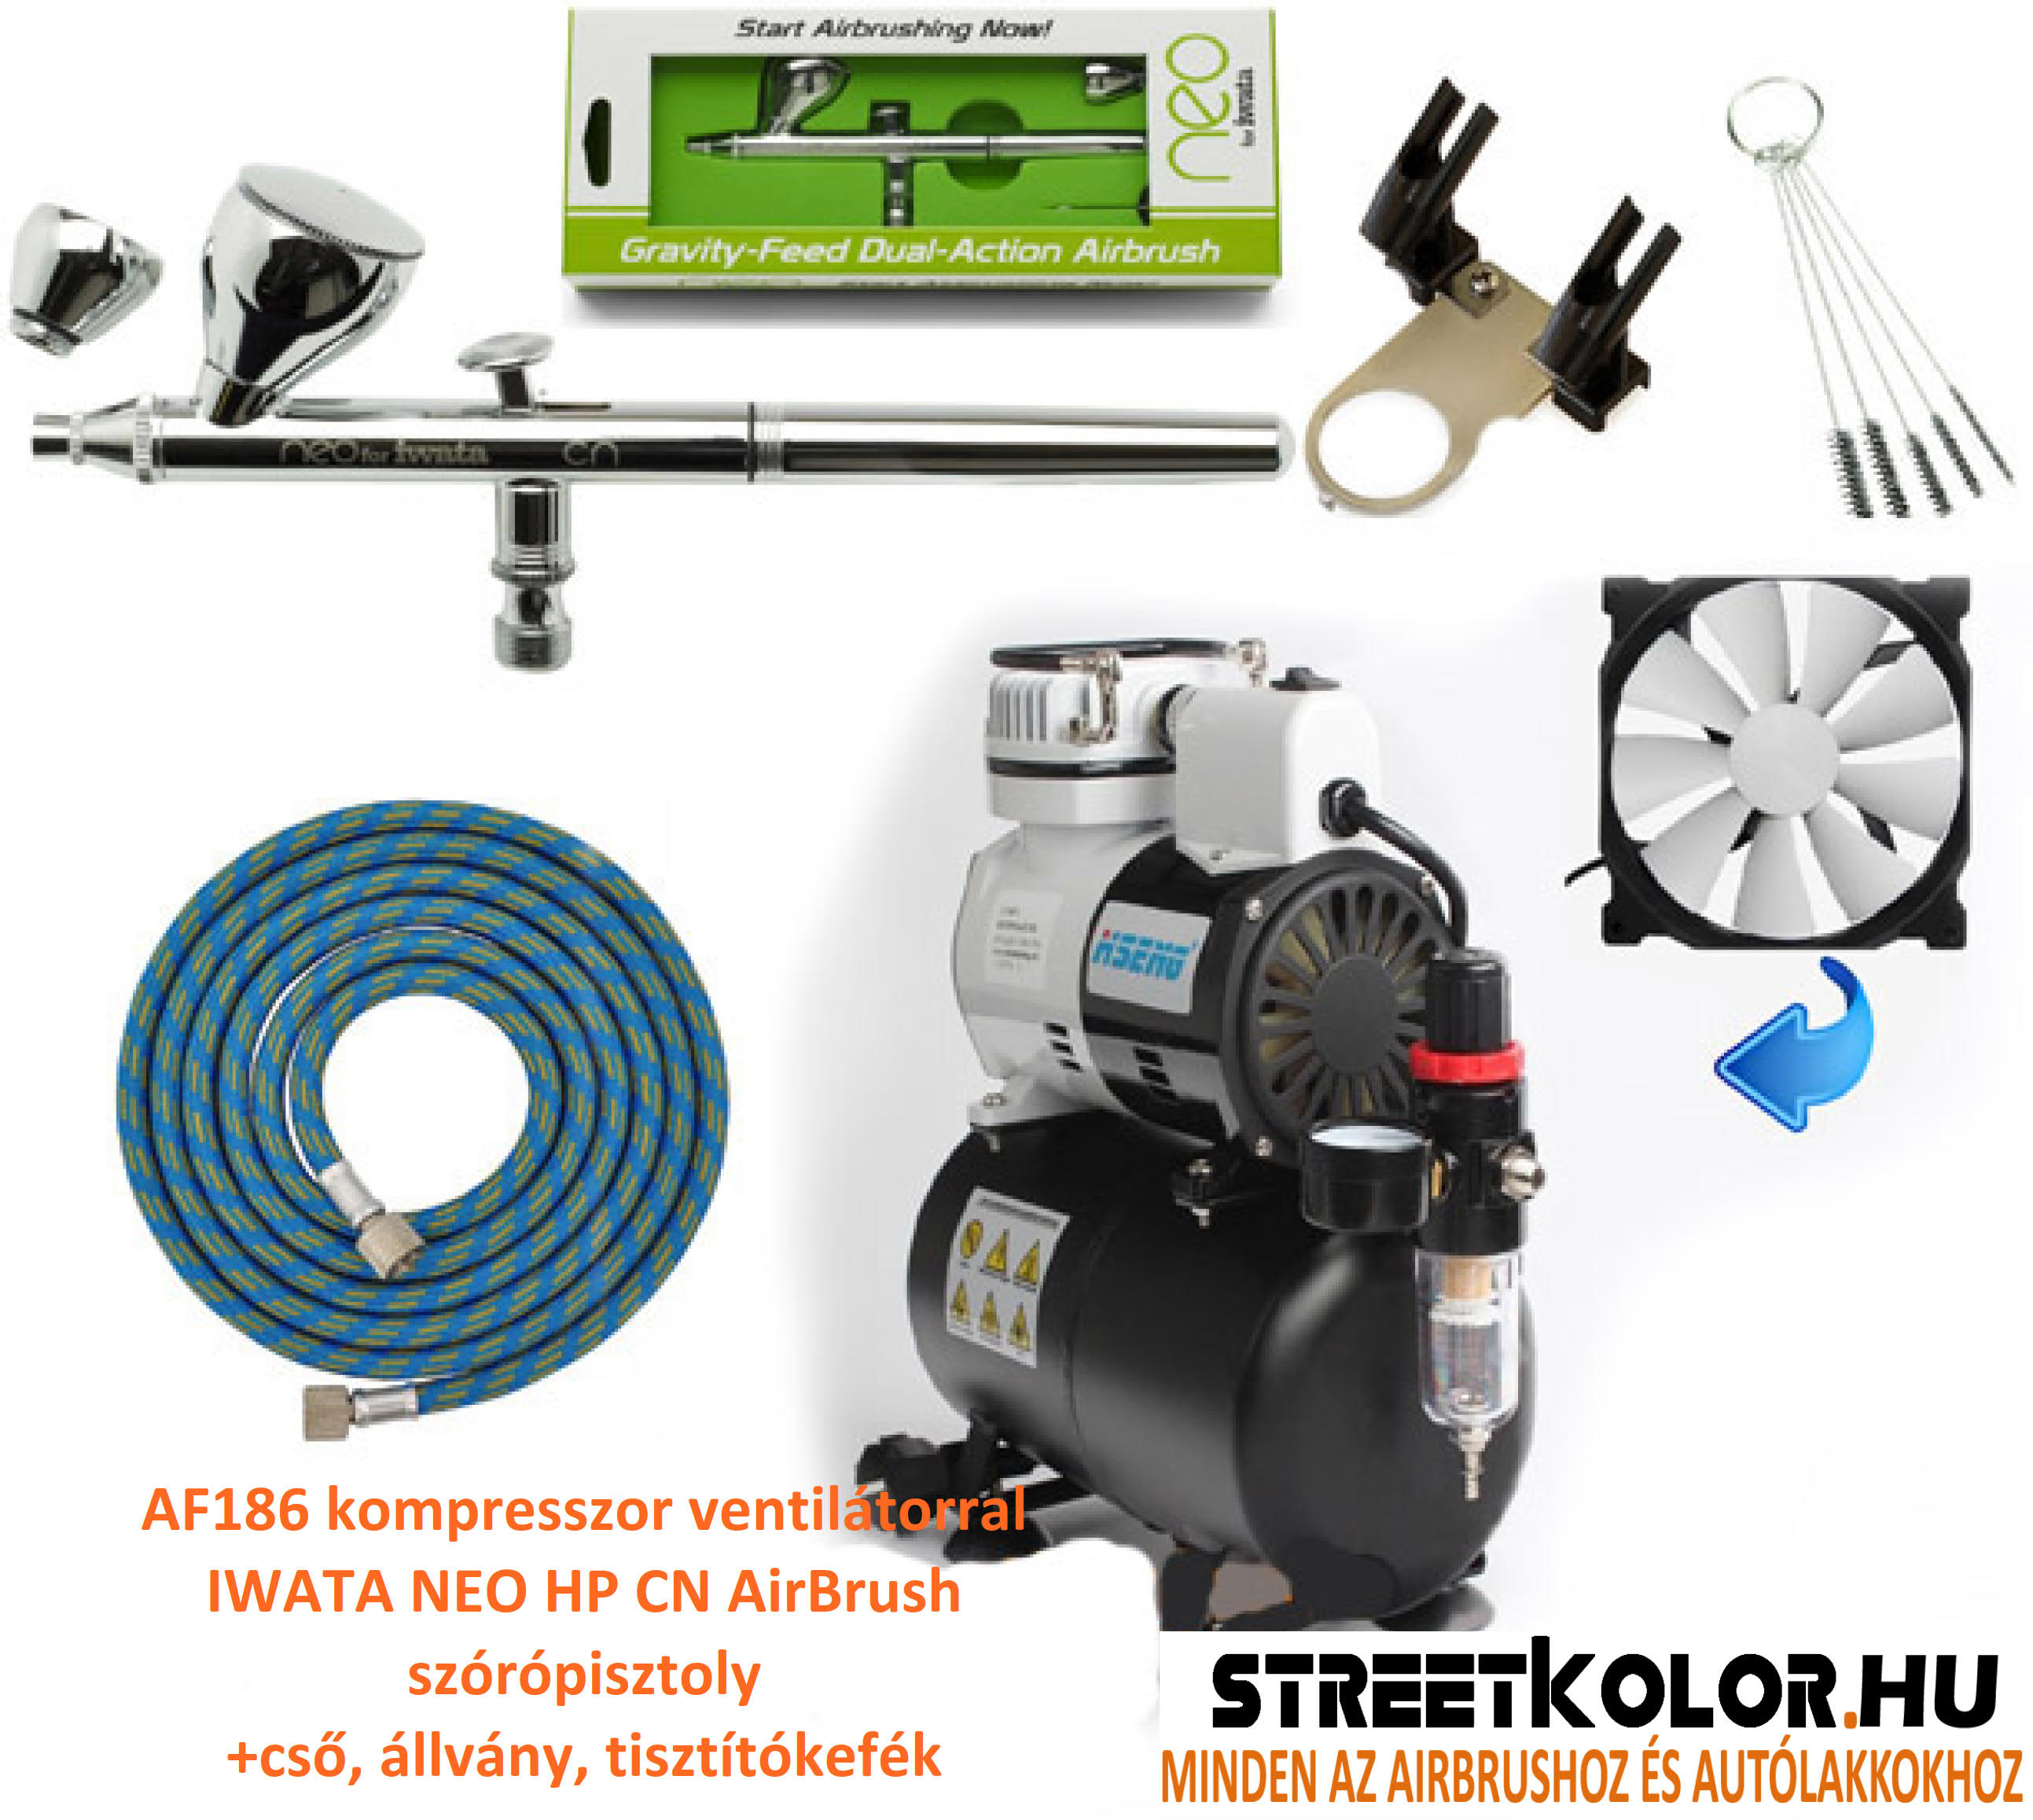 Airbrush szett: AF-186 kompresszor és IWATA NEO HP-CN pisztoly+cső+állvány+kefék